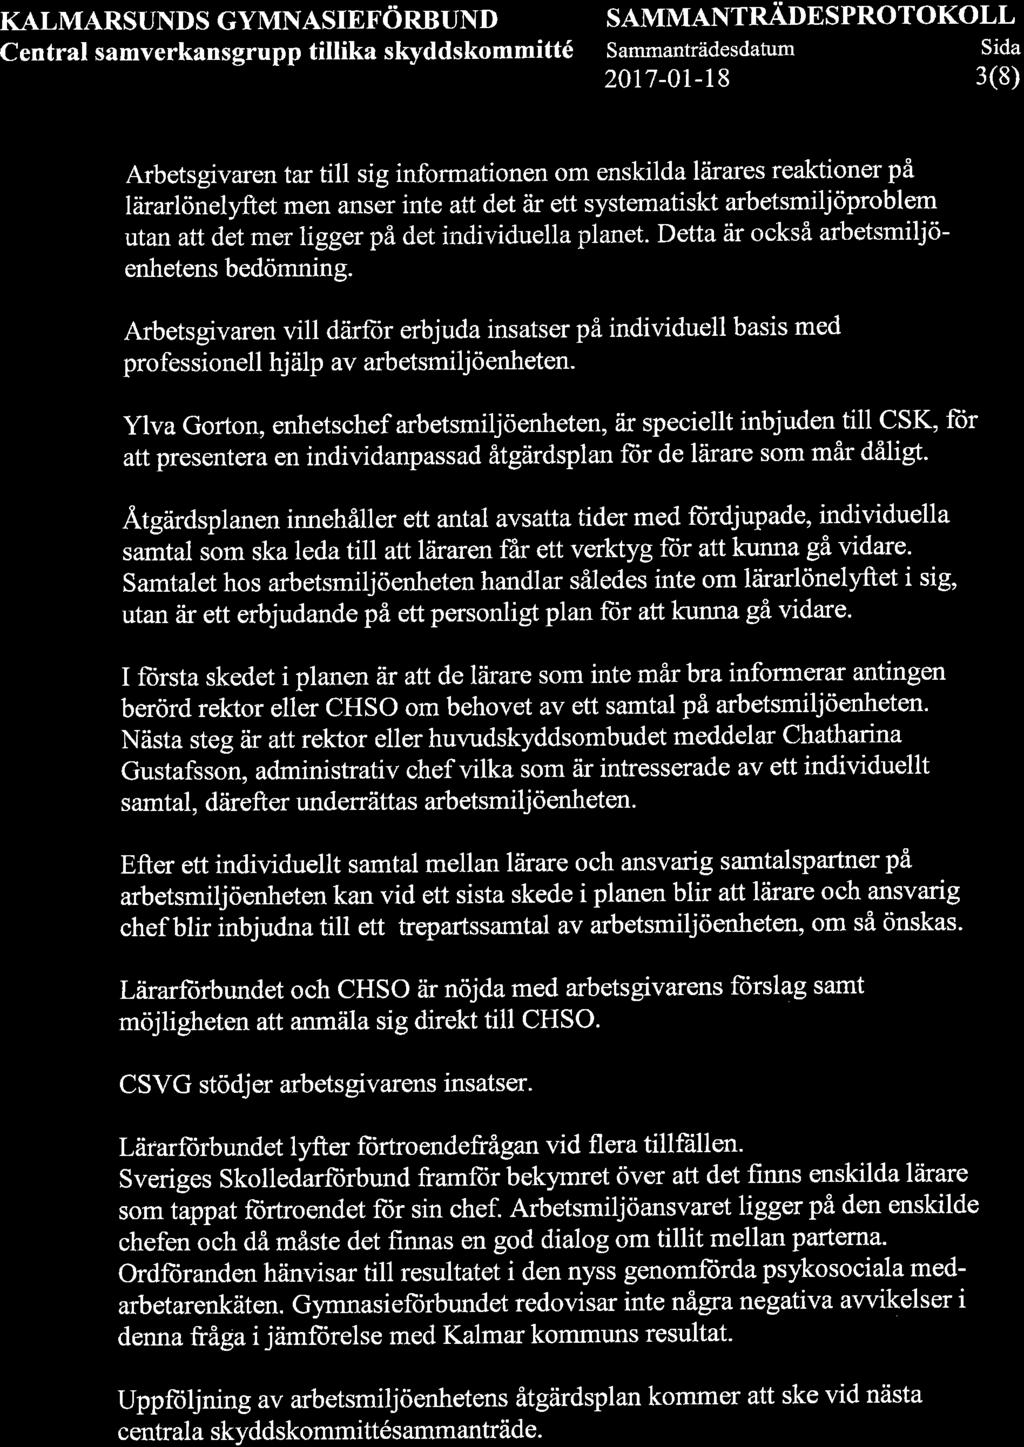 KALMARSUNDS GYMNASIEFÖRBUND Central samverkansgrupp titlika skyddskommitté SAMMANTRÄDESPROTOKOLL Sammanträdesdatum Sida 2017-01-18 3(8) Arbetsgivaren tar till sig informationen om enskilda låirares